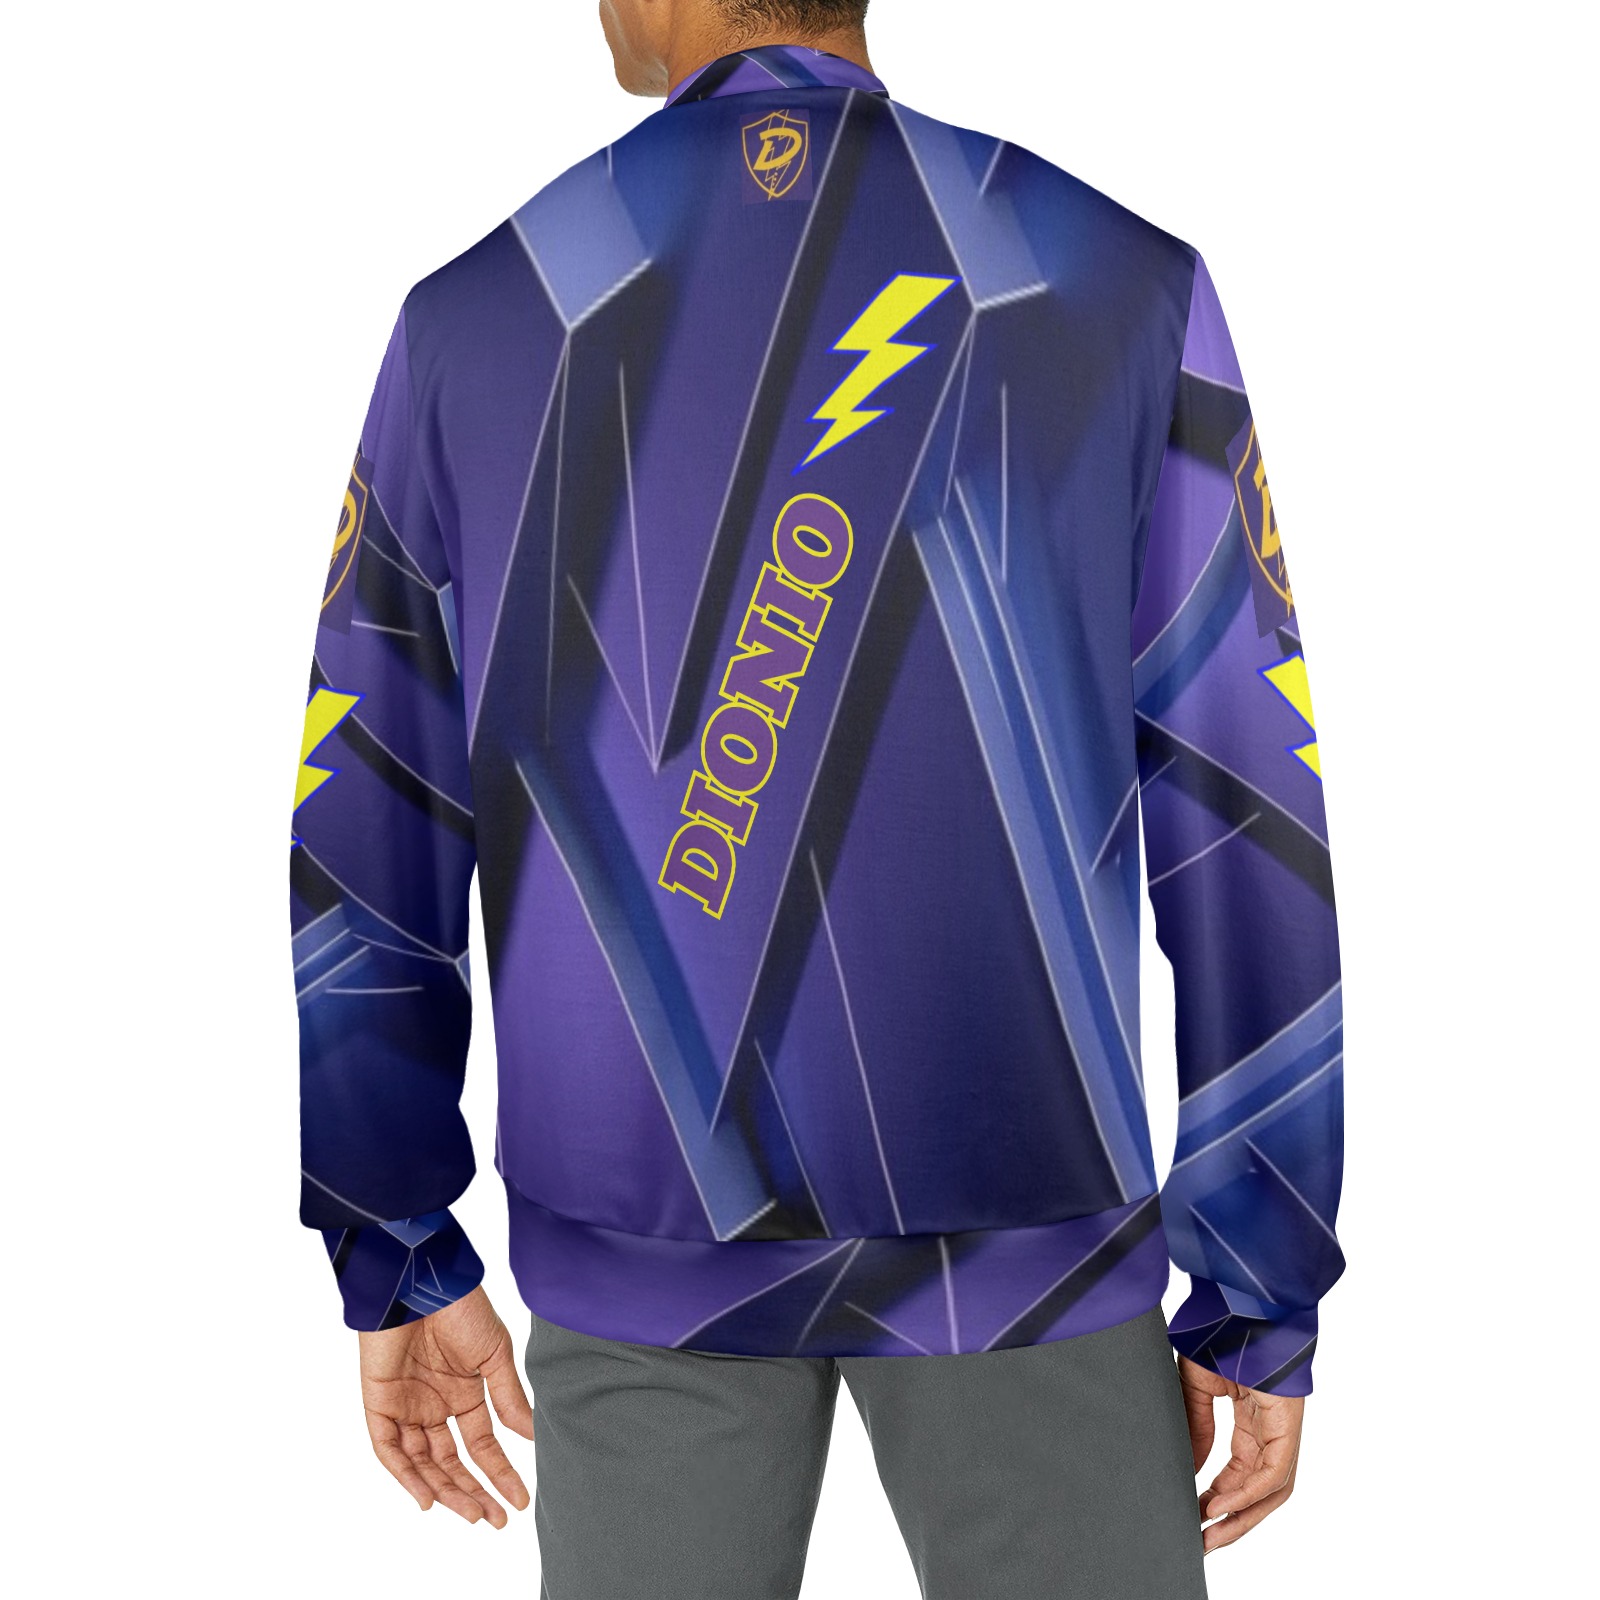 DIONIO - GALVADON 2 Sweatshirt (Purple) Men's All Over Print Mock Neck Sweatshirt (Model H43)